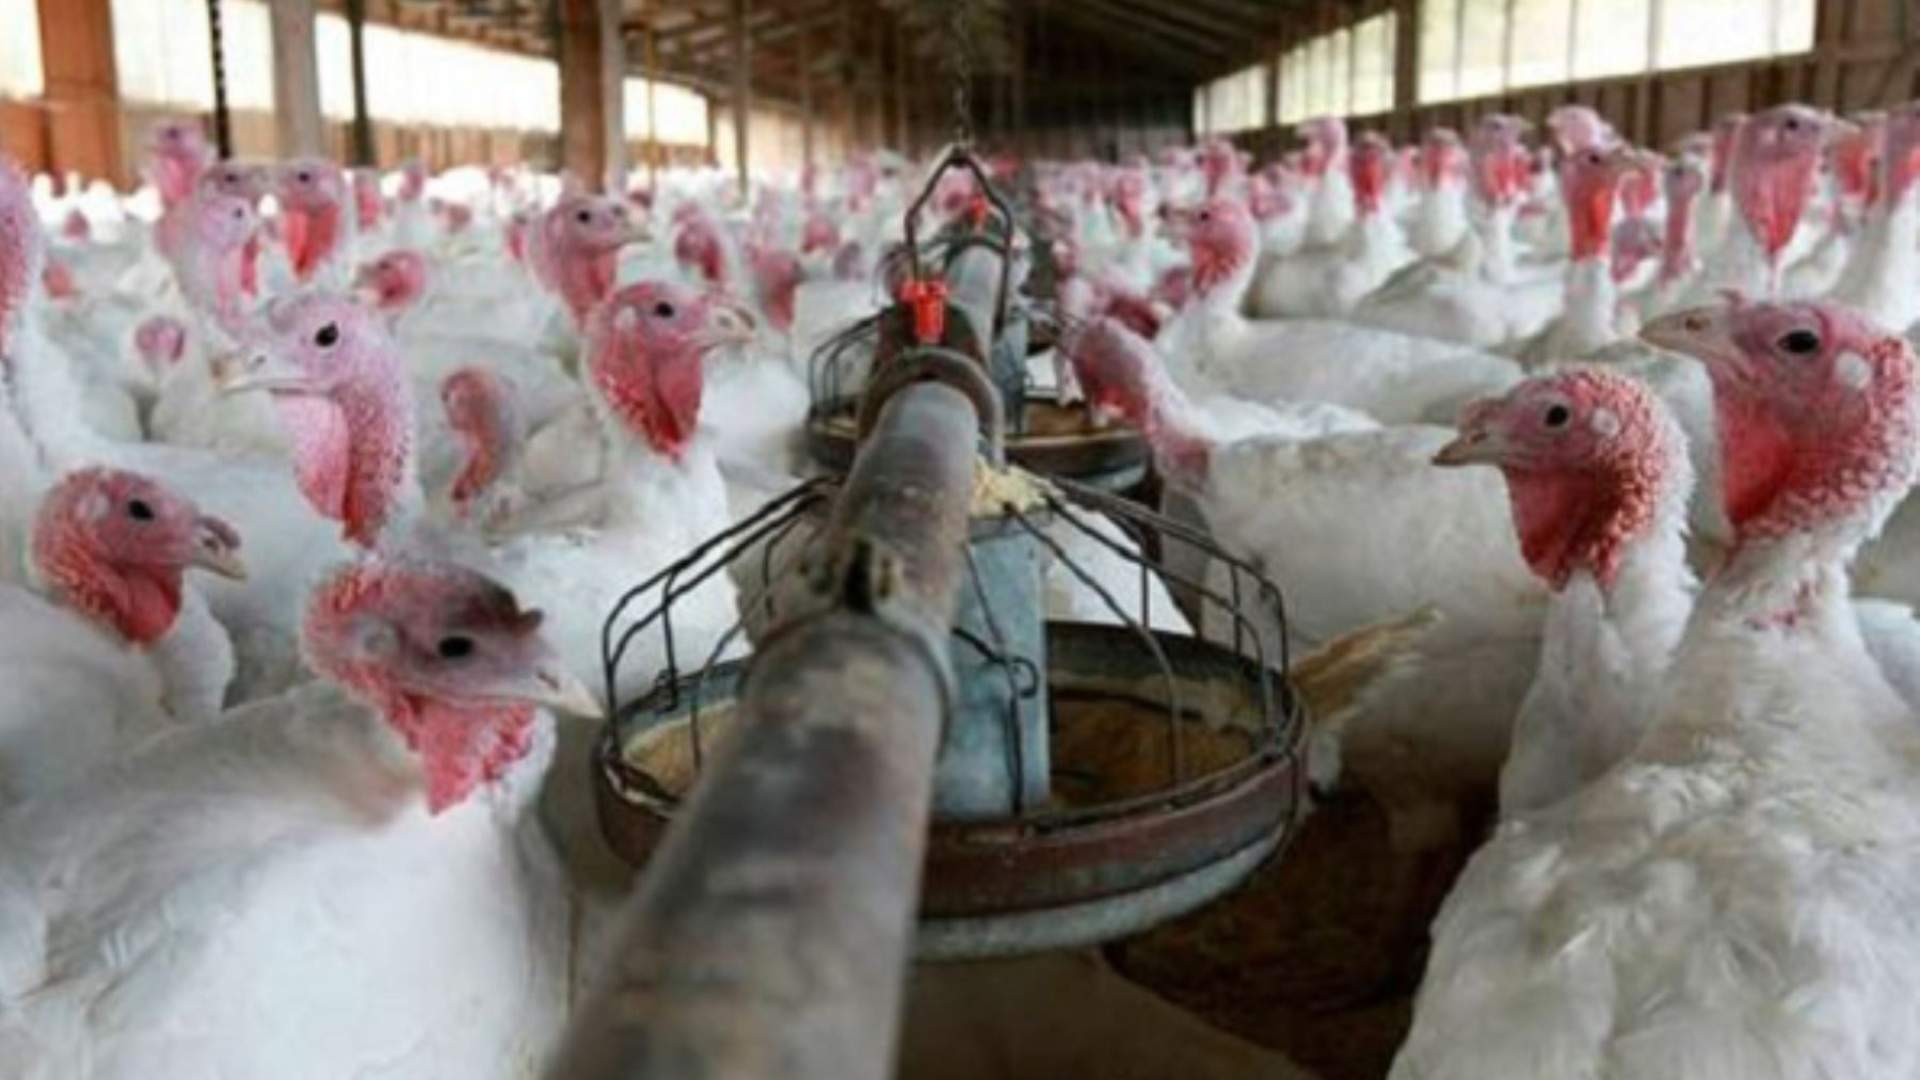 Hasta ahora los casos de personas afectadas por la gripe aviar son bajos. Sin embargo, las autoridades sanitarias advierten que hay riesgo de que el virus cambie y podría transmitirse entre humanos/Archivo